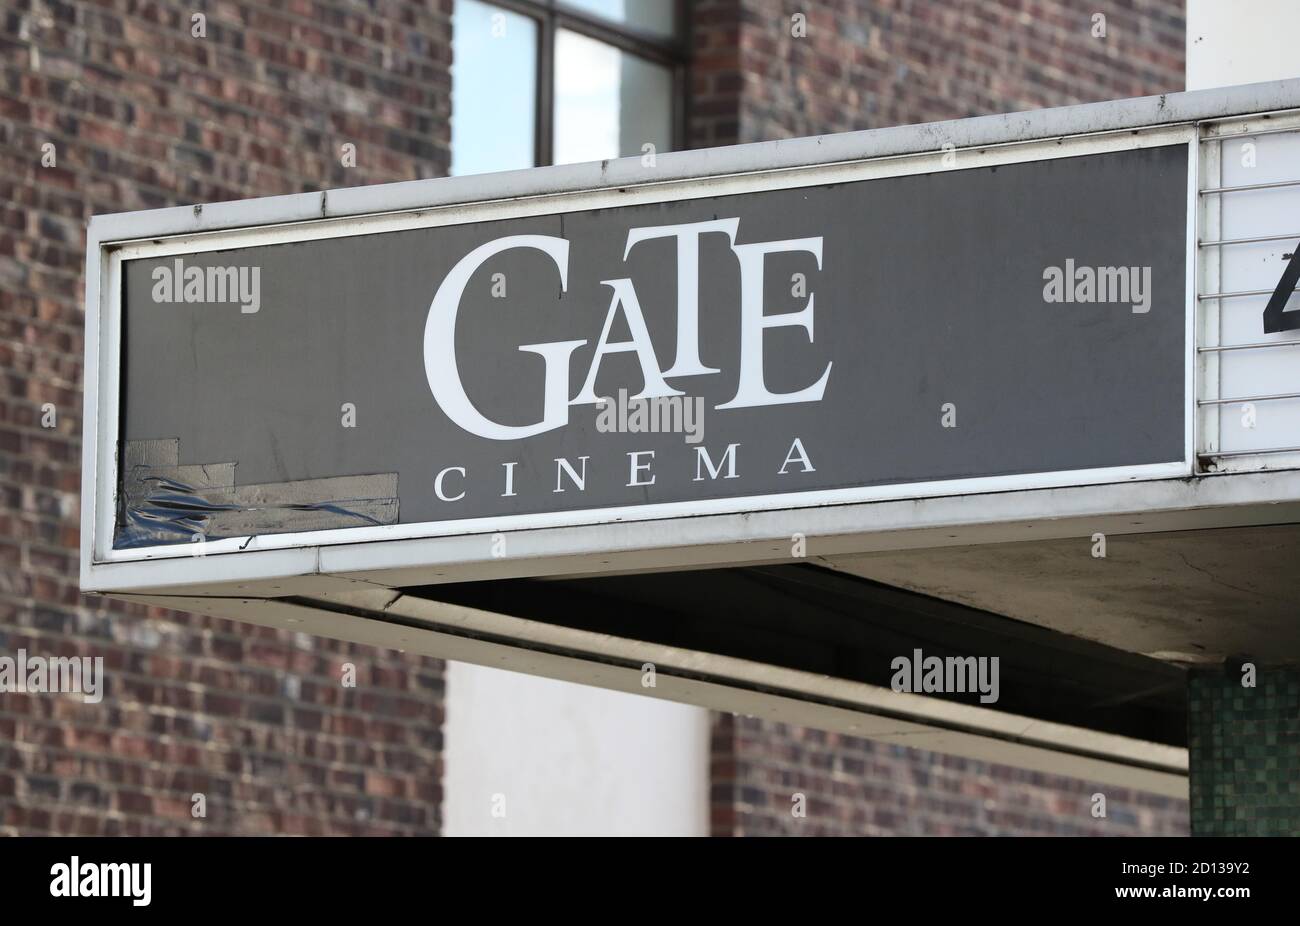 Das Gate-Kino in Notting Hill, London, eines der Picturehaus-Kinos, das schließen wird, nachdem die Cineworld-Kette ihre Pläne bestätigt hat, ihre Standorte sowohl in Großbritannien als auch in den USA vorübergehend zu schließen, nachdem große Studios begonnen hatten, ihre großen Filmveröffentlichungen zu verzögern, um auf ein besseres Publikum zu warten. Stockfoto